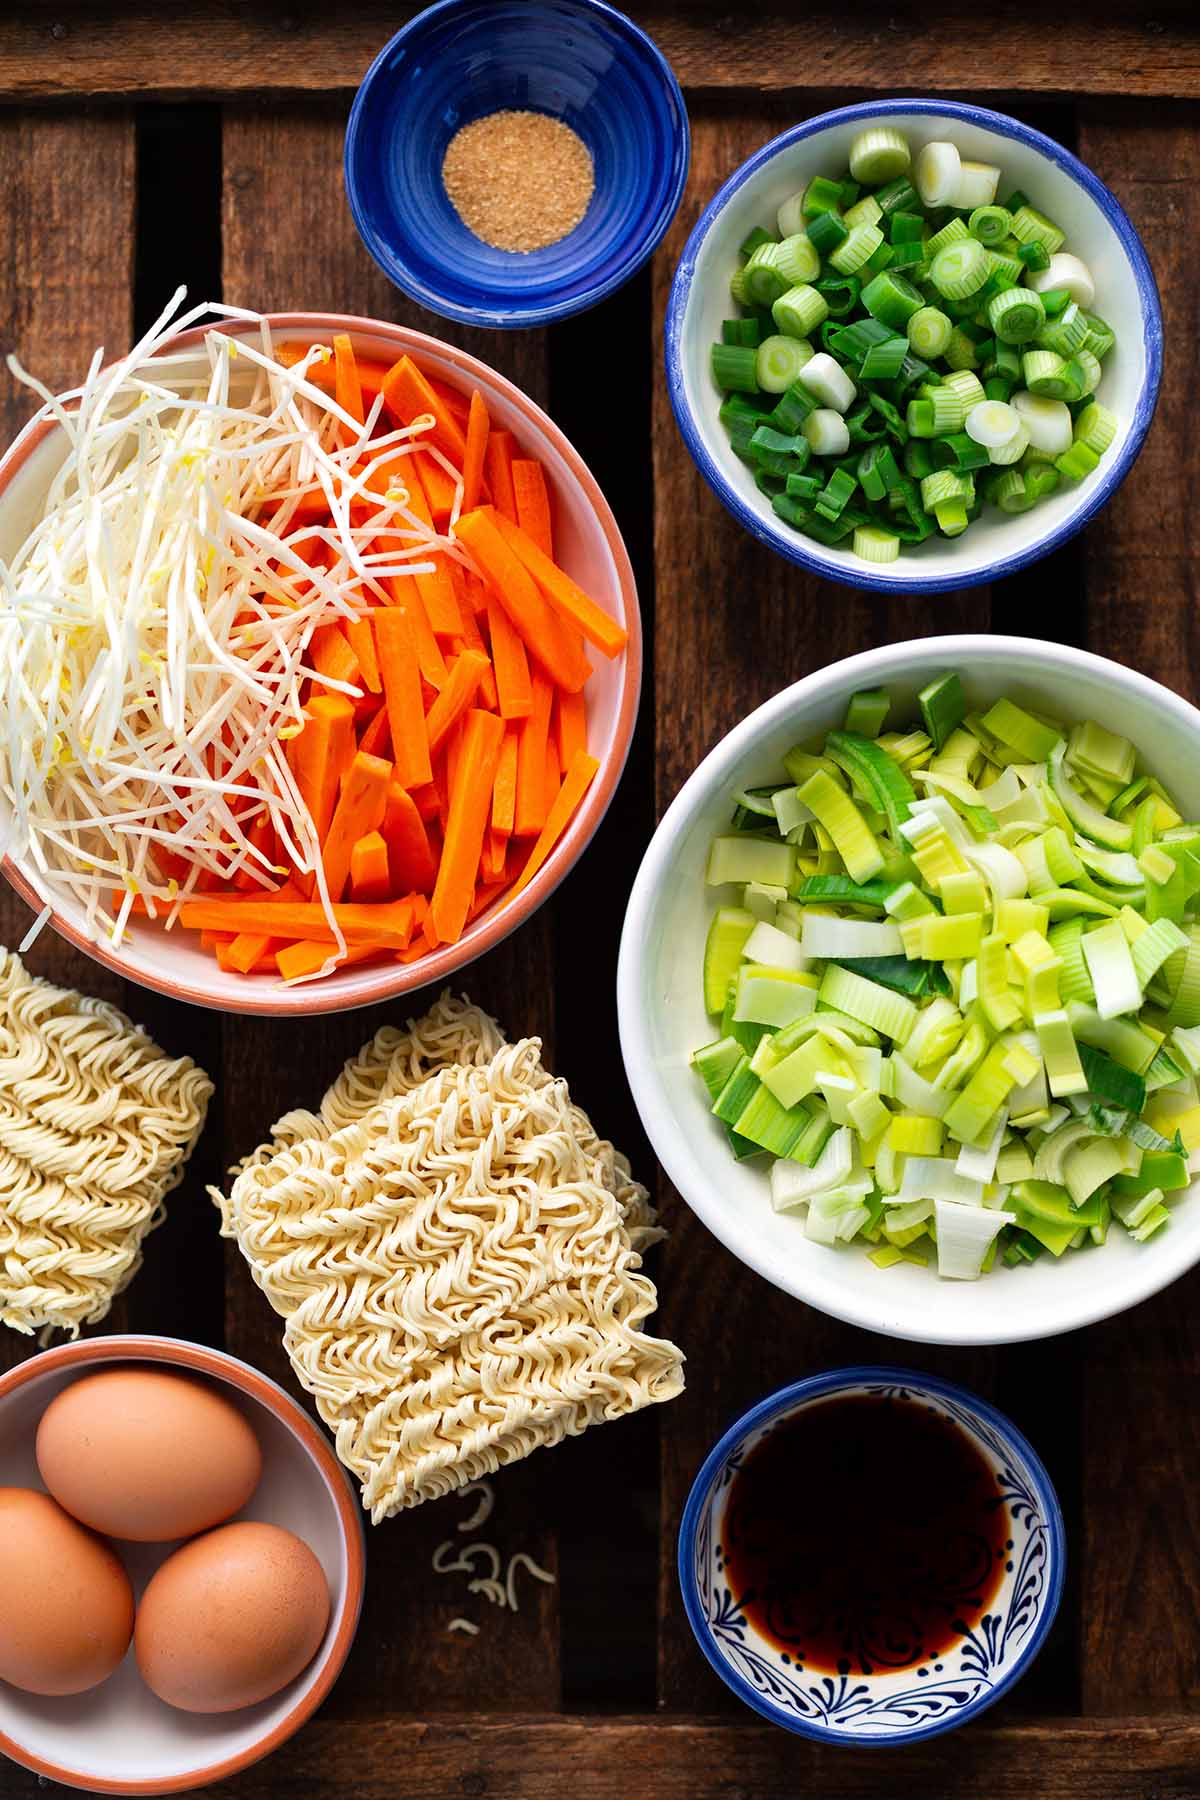 Alle Zutaten für chinesisch gebratene Nudeln mit Gemüse und Ei  wie vom Lieferdienst im Überblick. Mit Lauch,Karotten, Mie Nudeln, Frühlingszwiebeln und Ei.